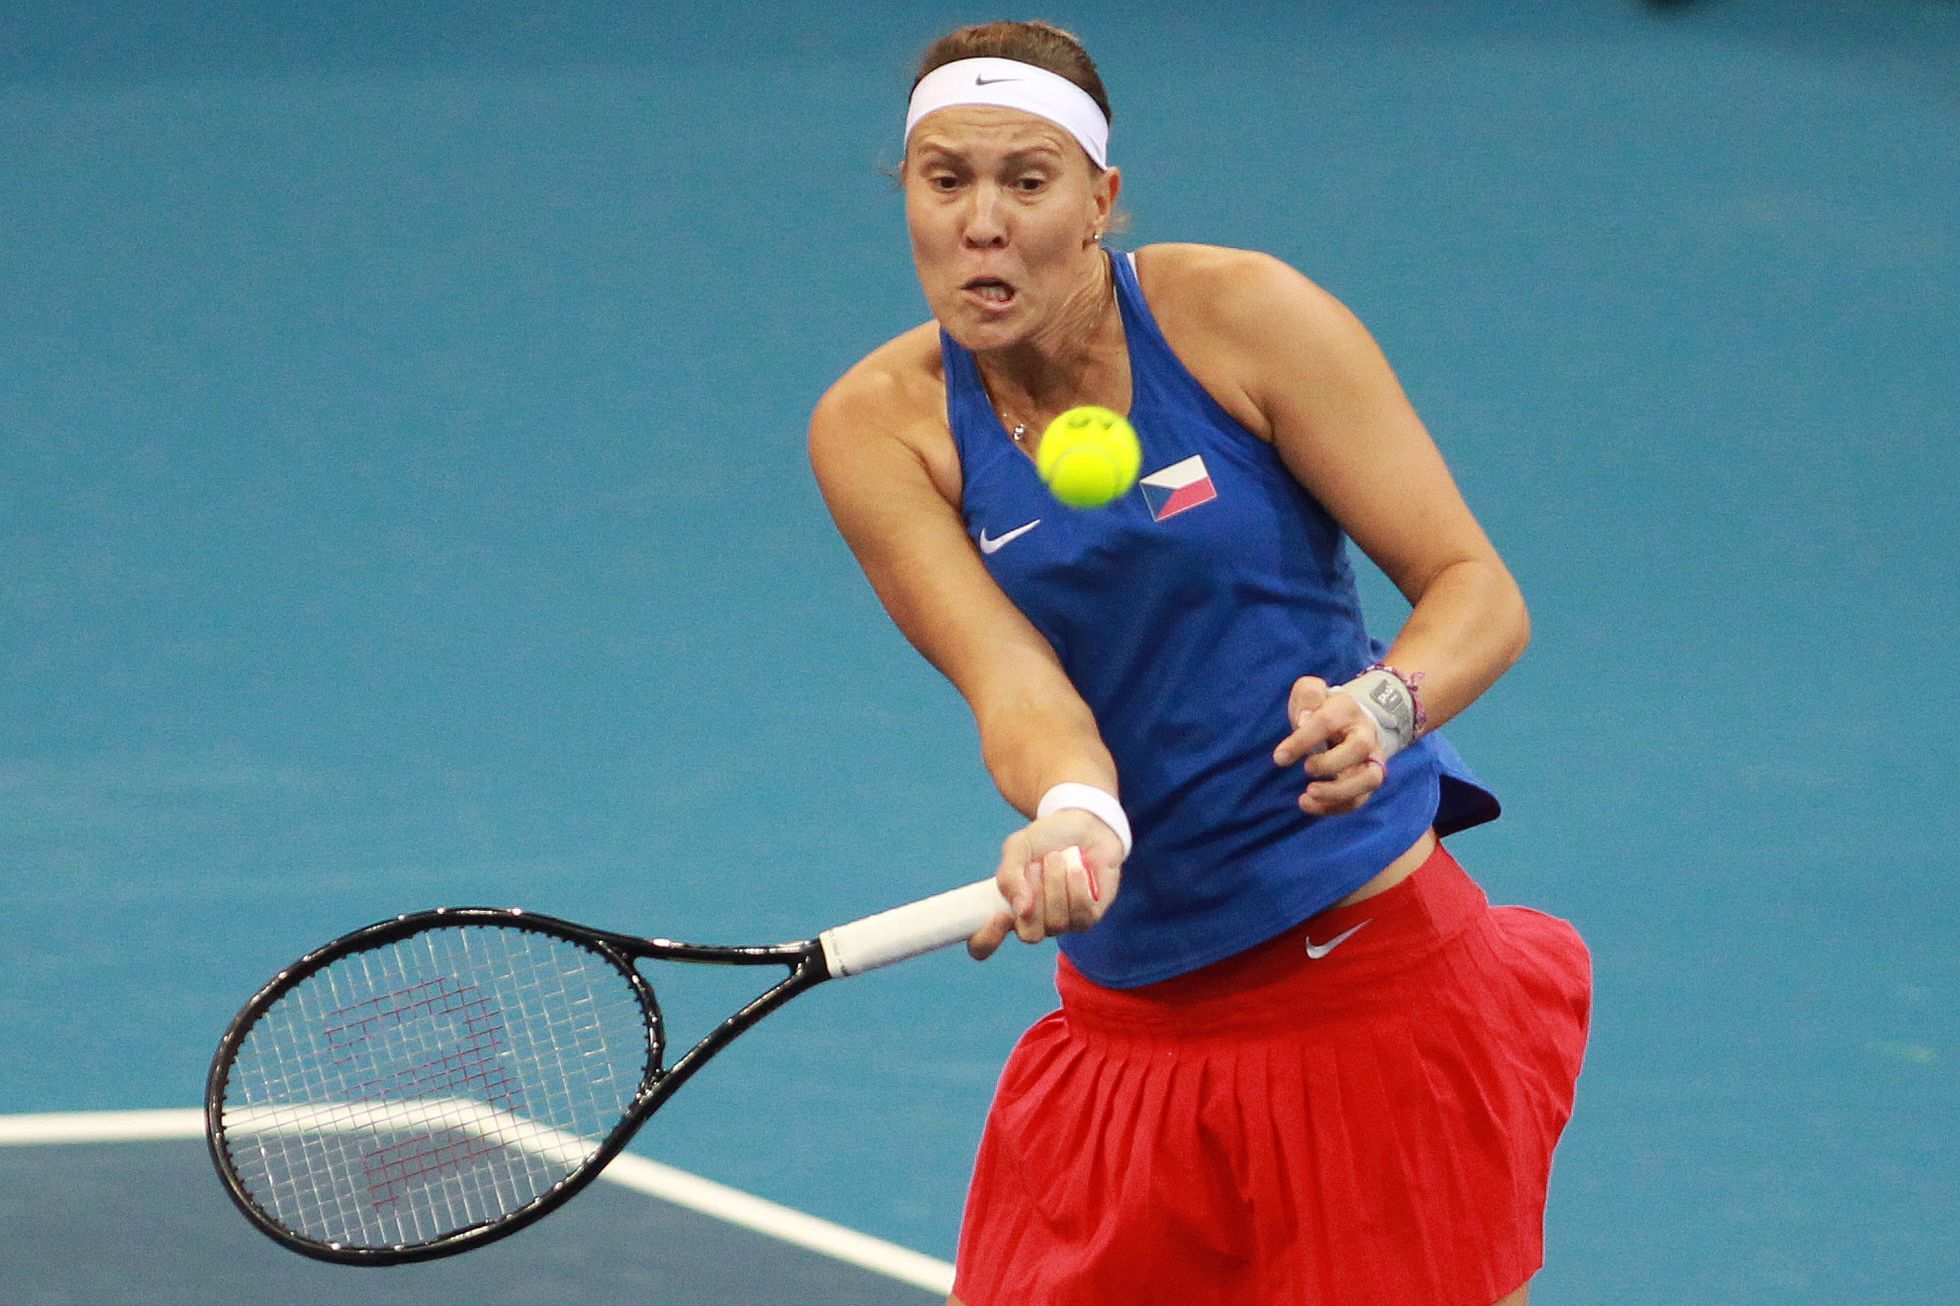 Hradecká und Mirzaová verloren ihre Titel in einer Super-Traumpause an Straßburg